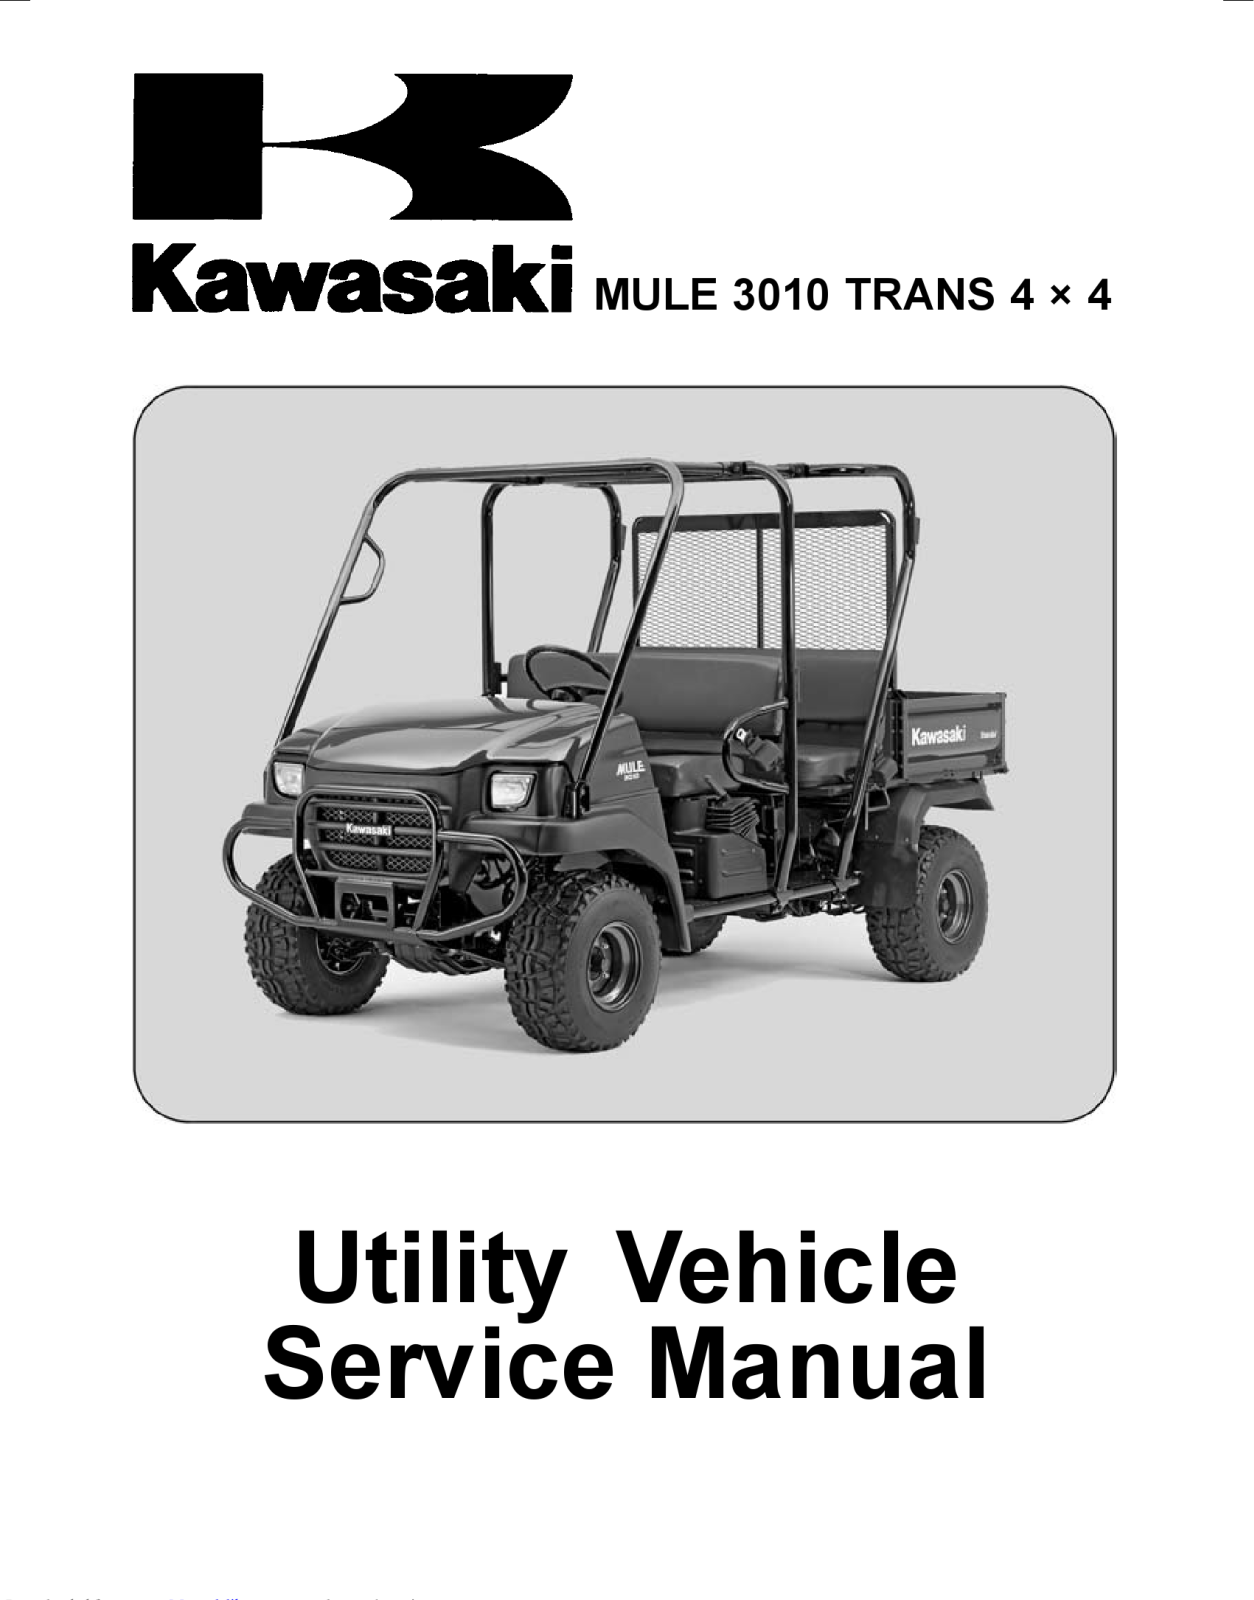 Kawasaki MULE 3010 TRANS Service Manual